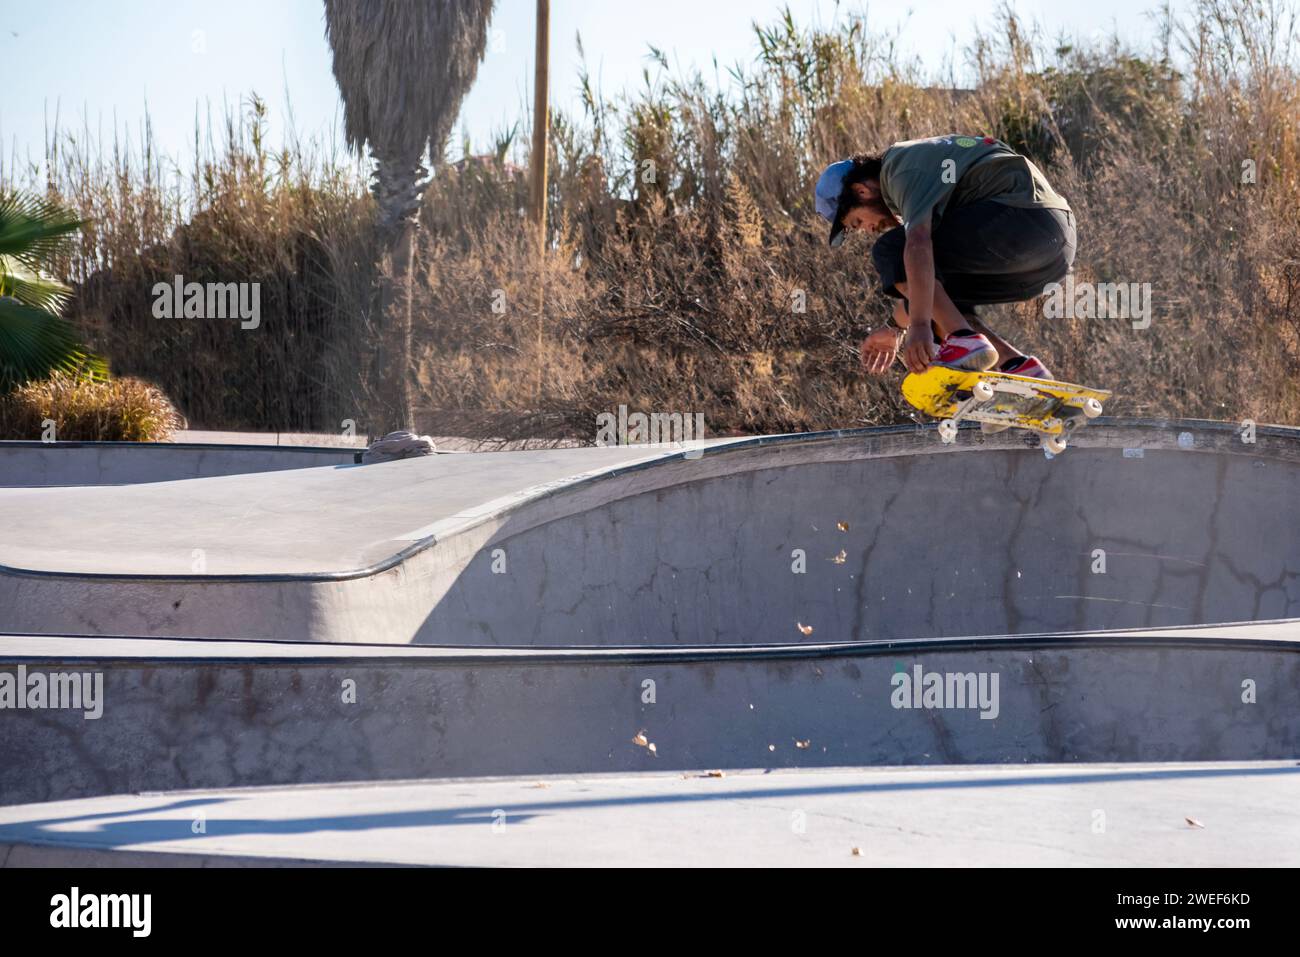 Fall skate VIBES: El skateboarder amarillo coge aire, deja remolinos en el dinámico parque de skate urbano Foto de stock